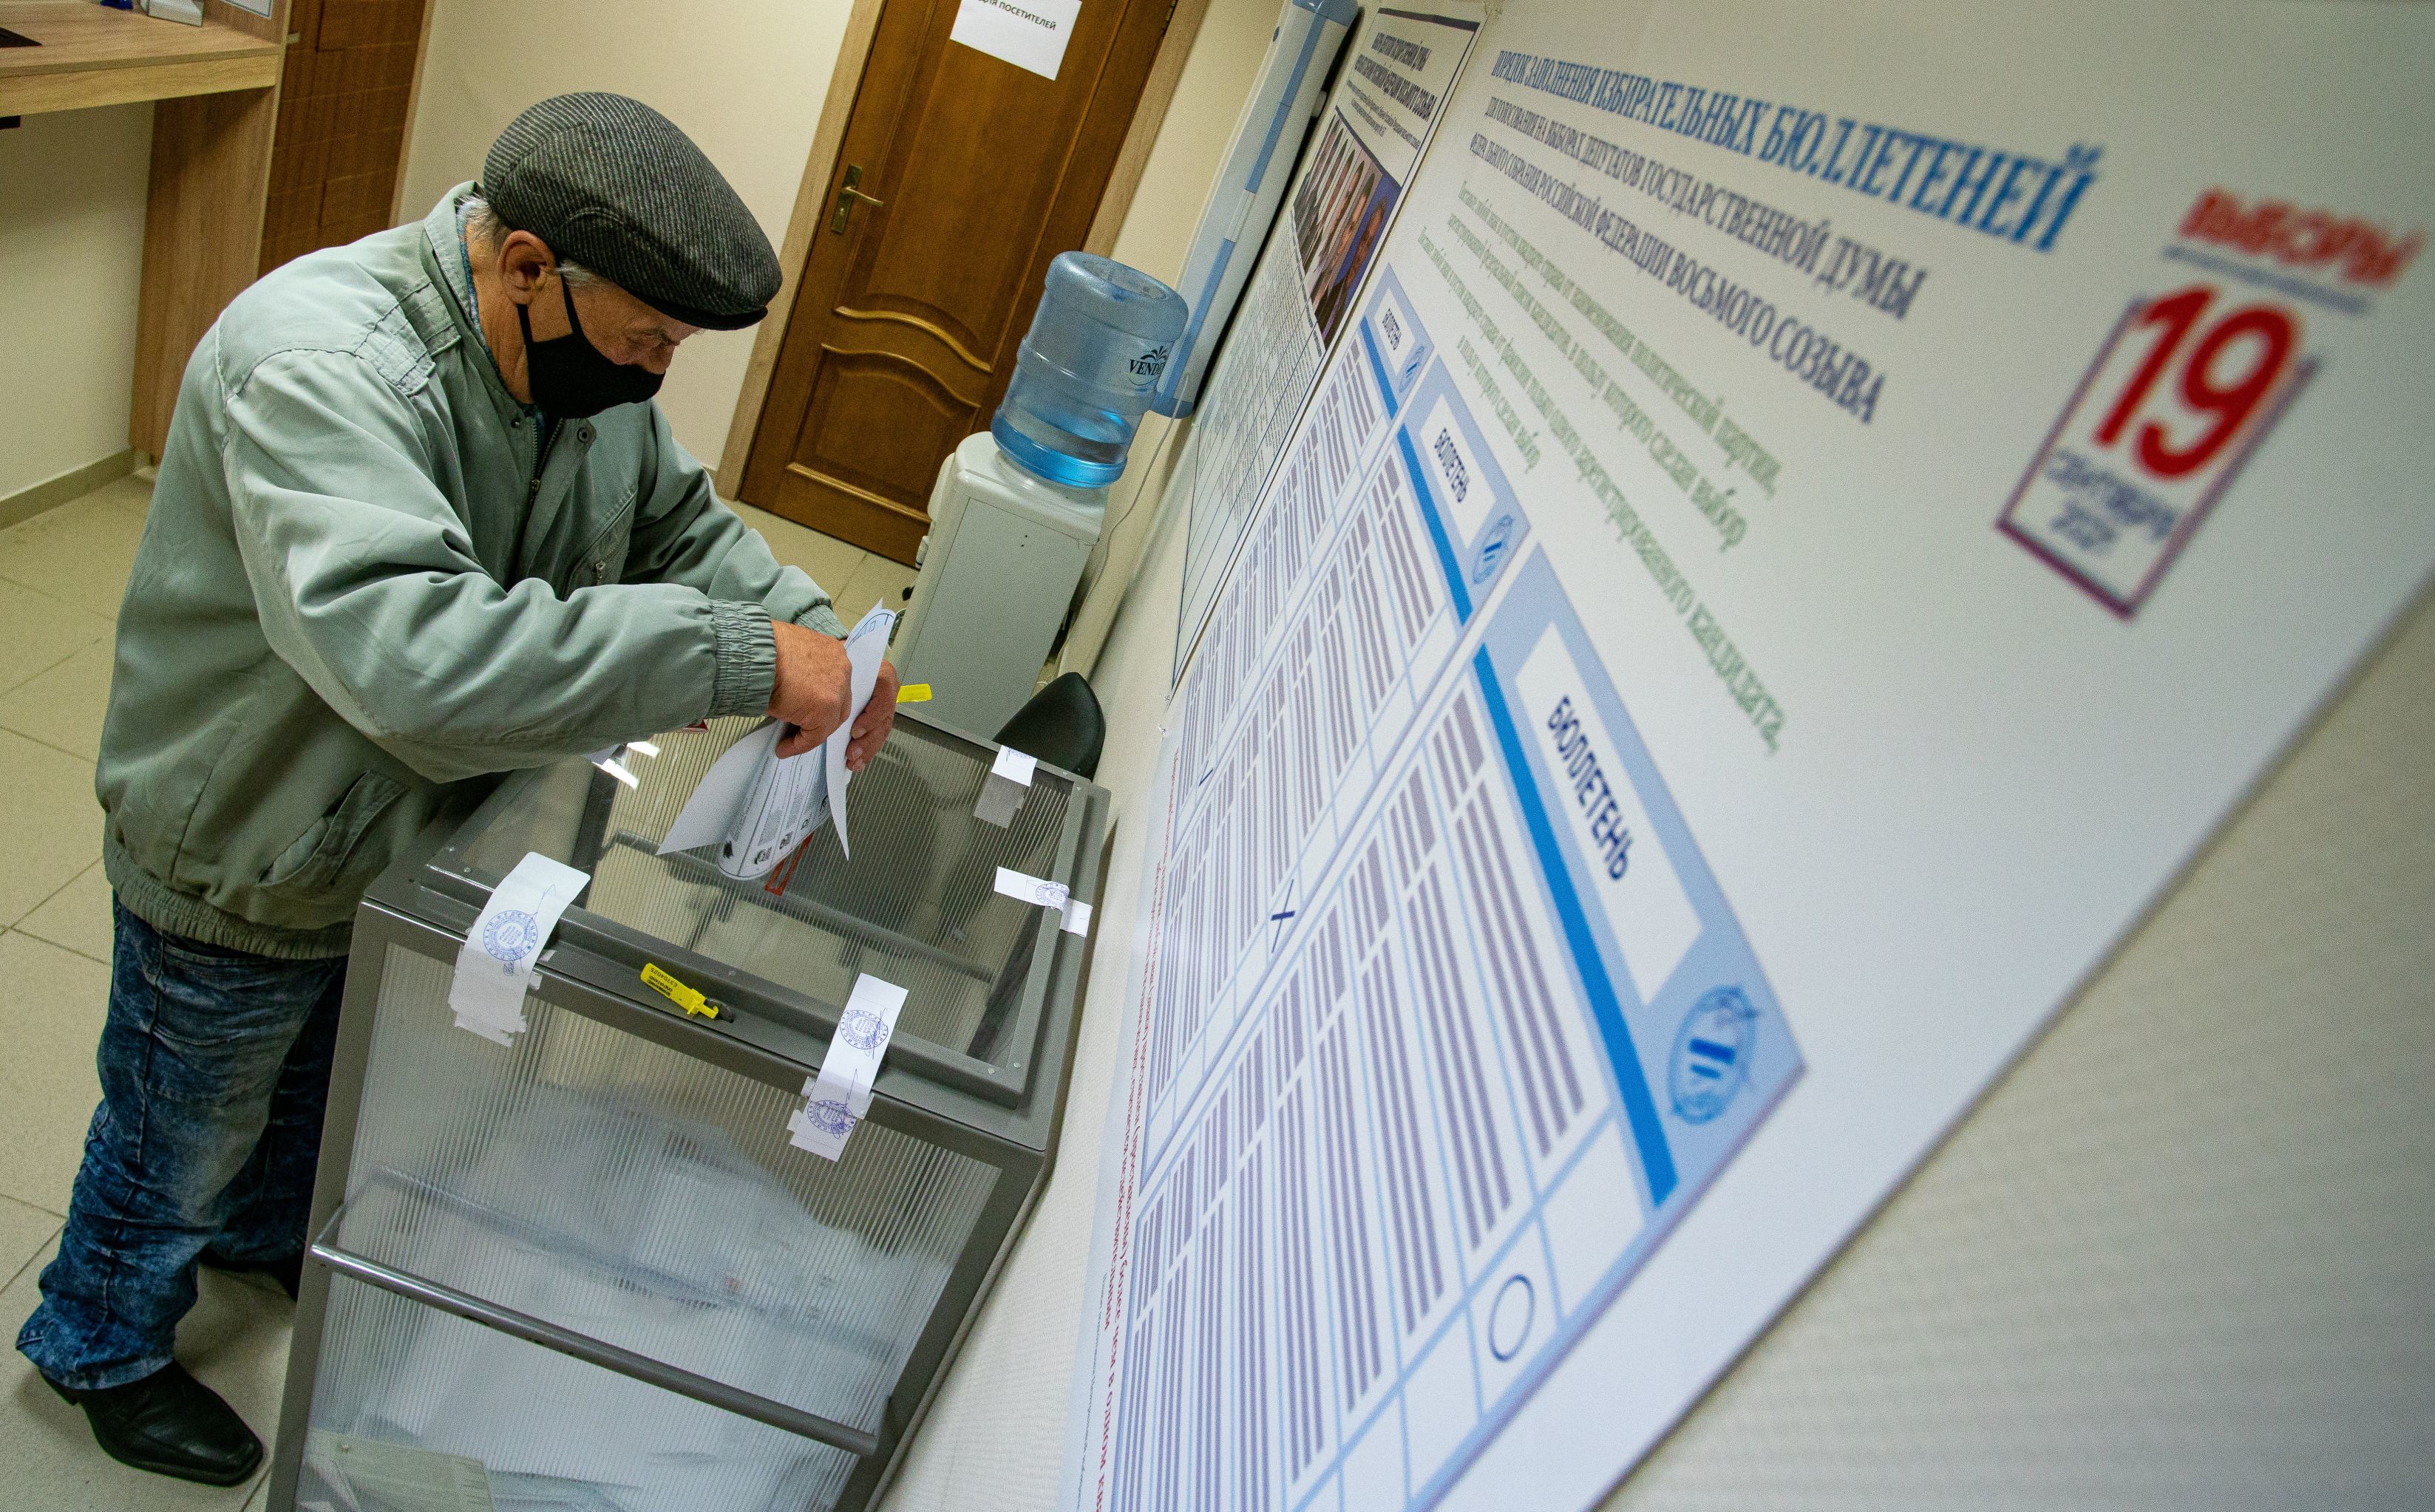 Мужчина голосует на выборах в Госдуму на избирательном участке в посольстве России в Латвии